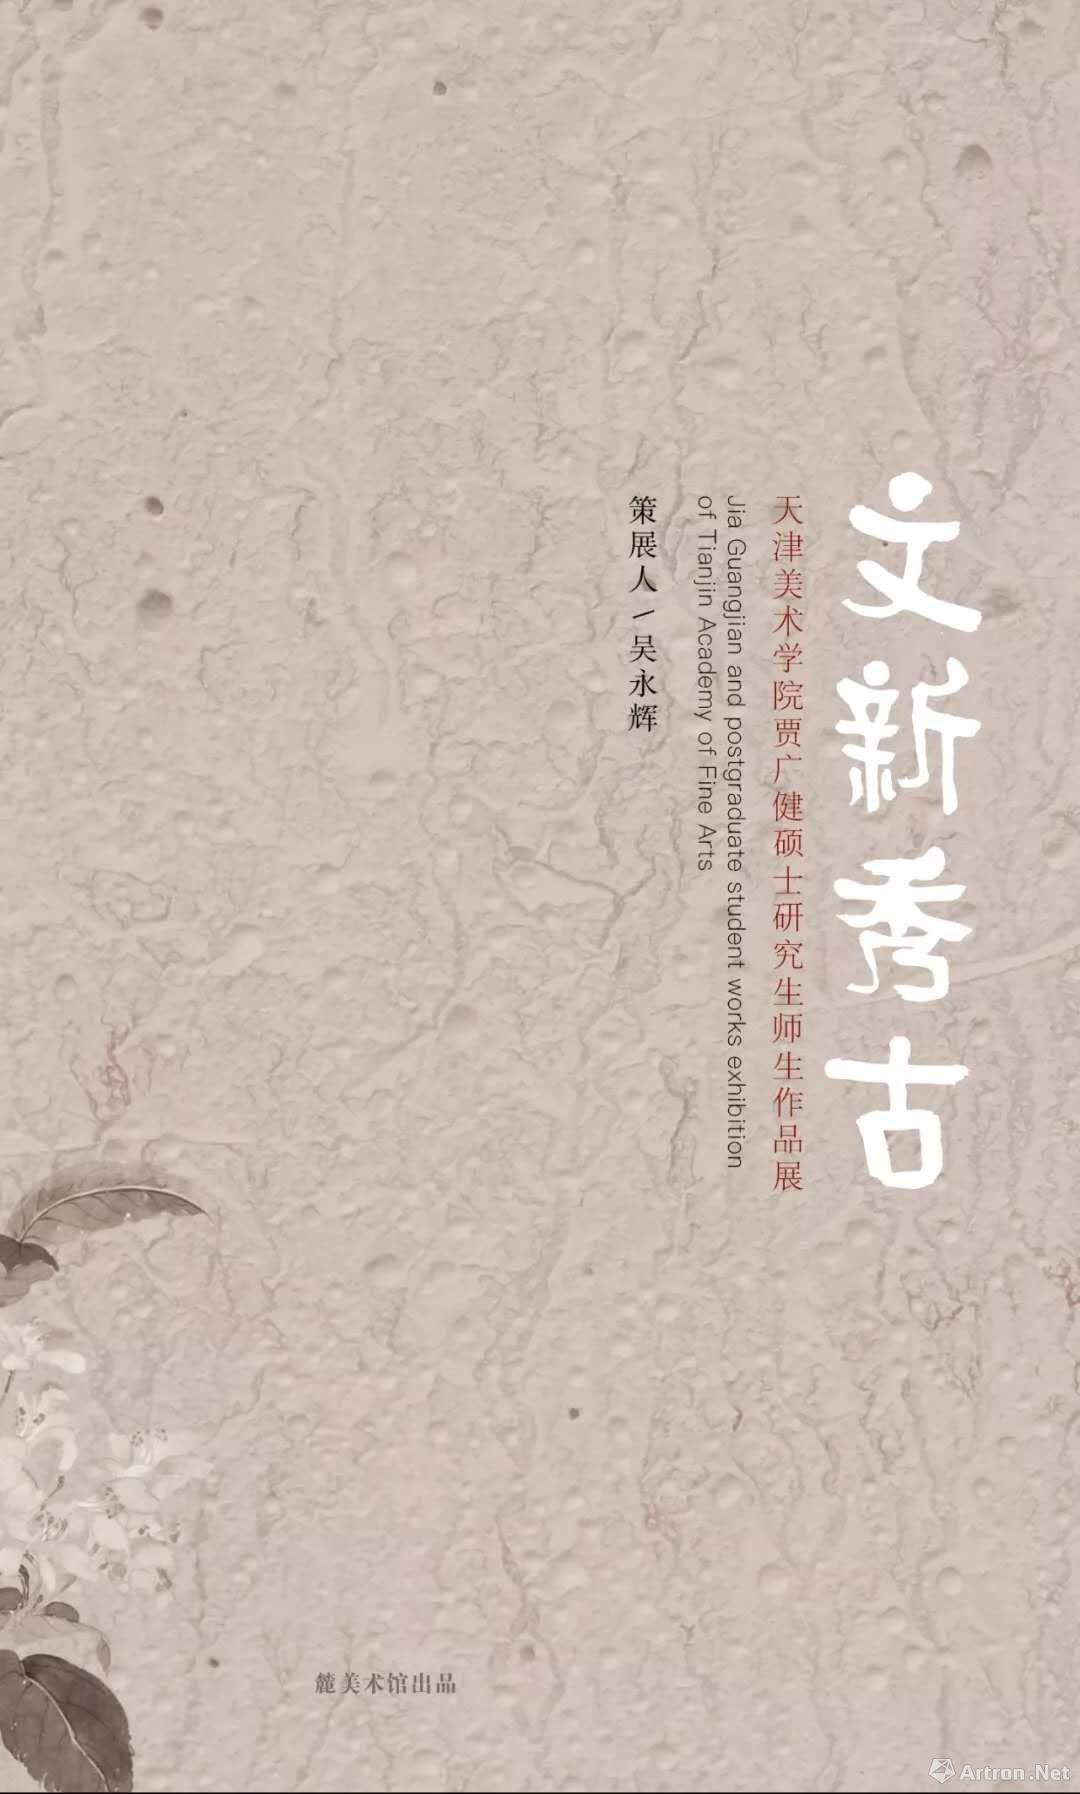 “文新秀古”天津美术学院贾广健硕士研究生师生作品展